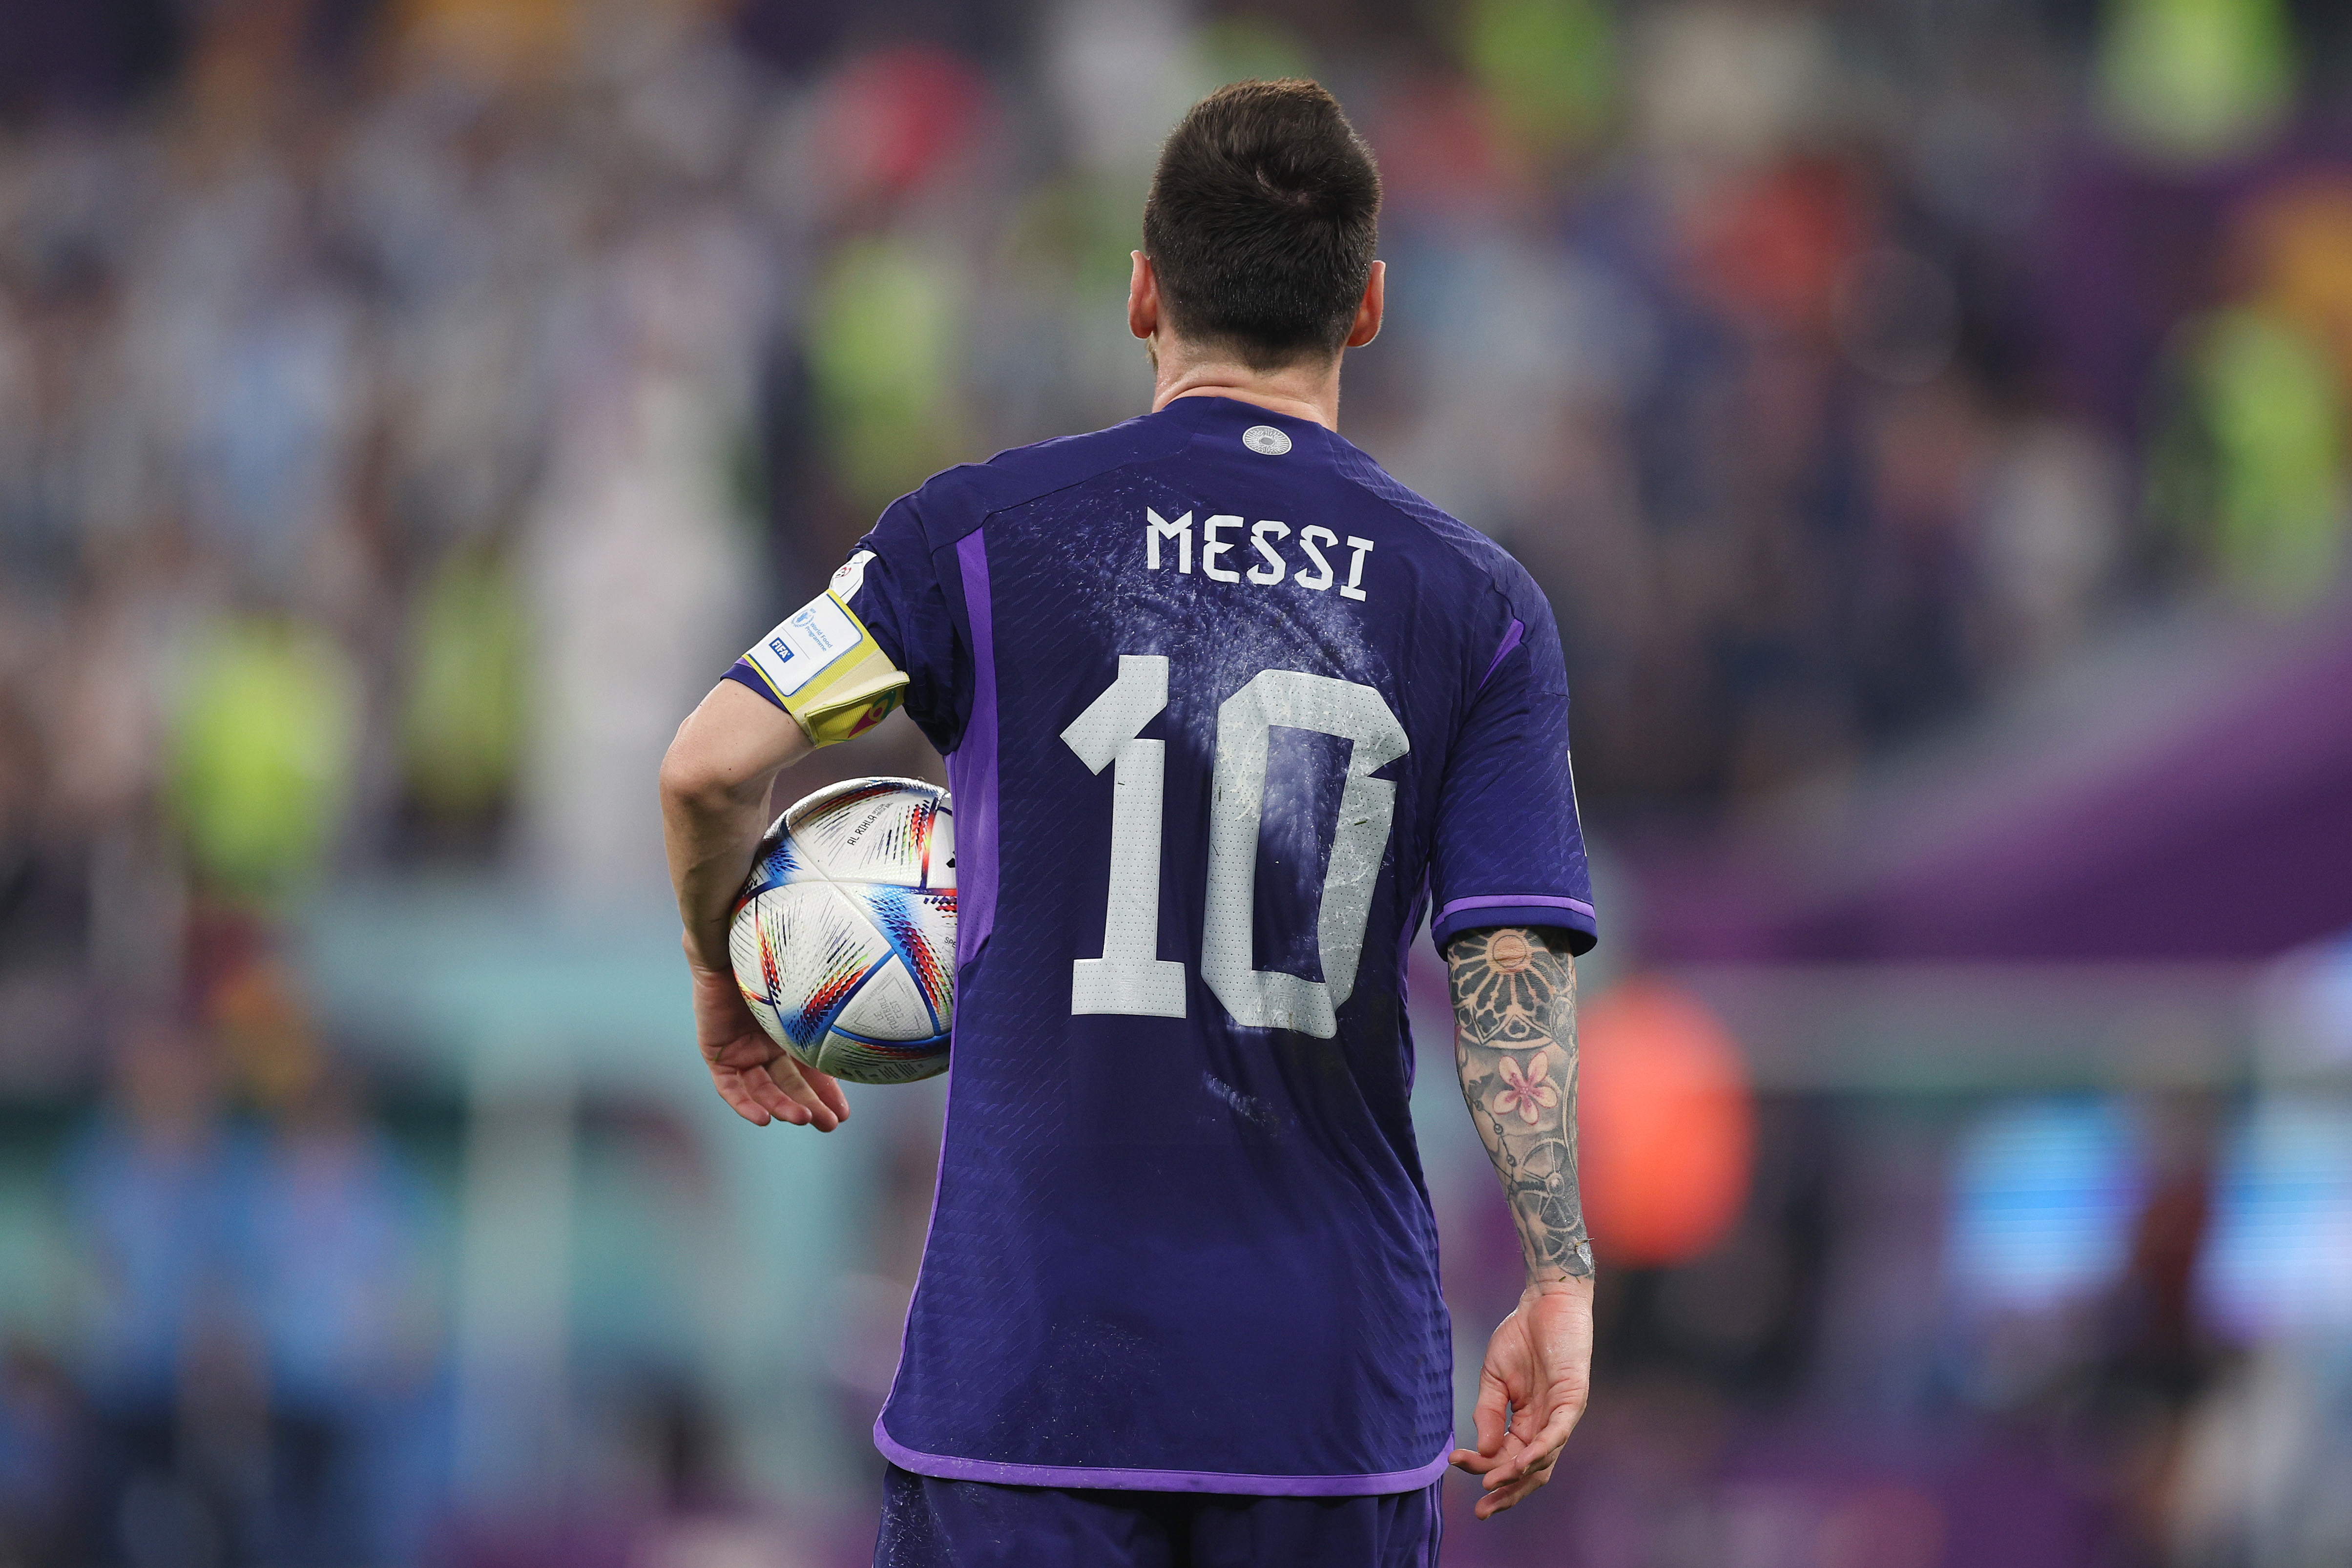 Messi: a genial inteligência de quem anda em campo a caminho da glória